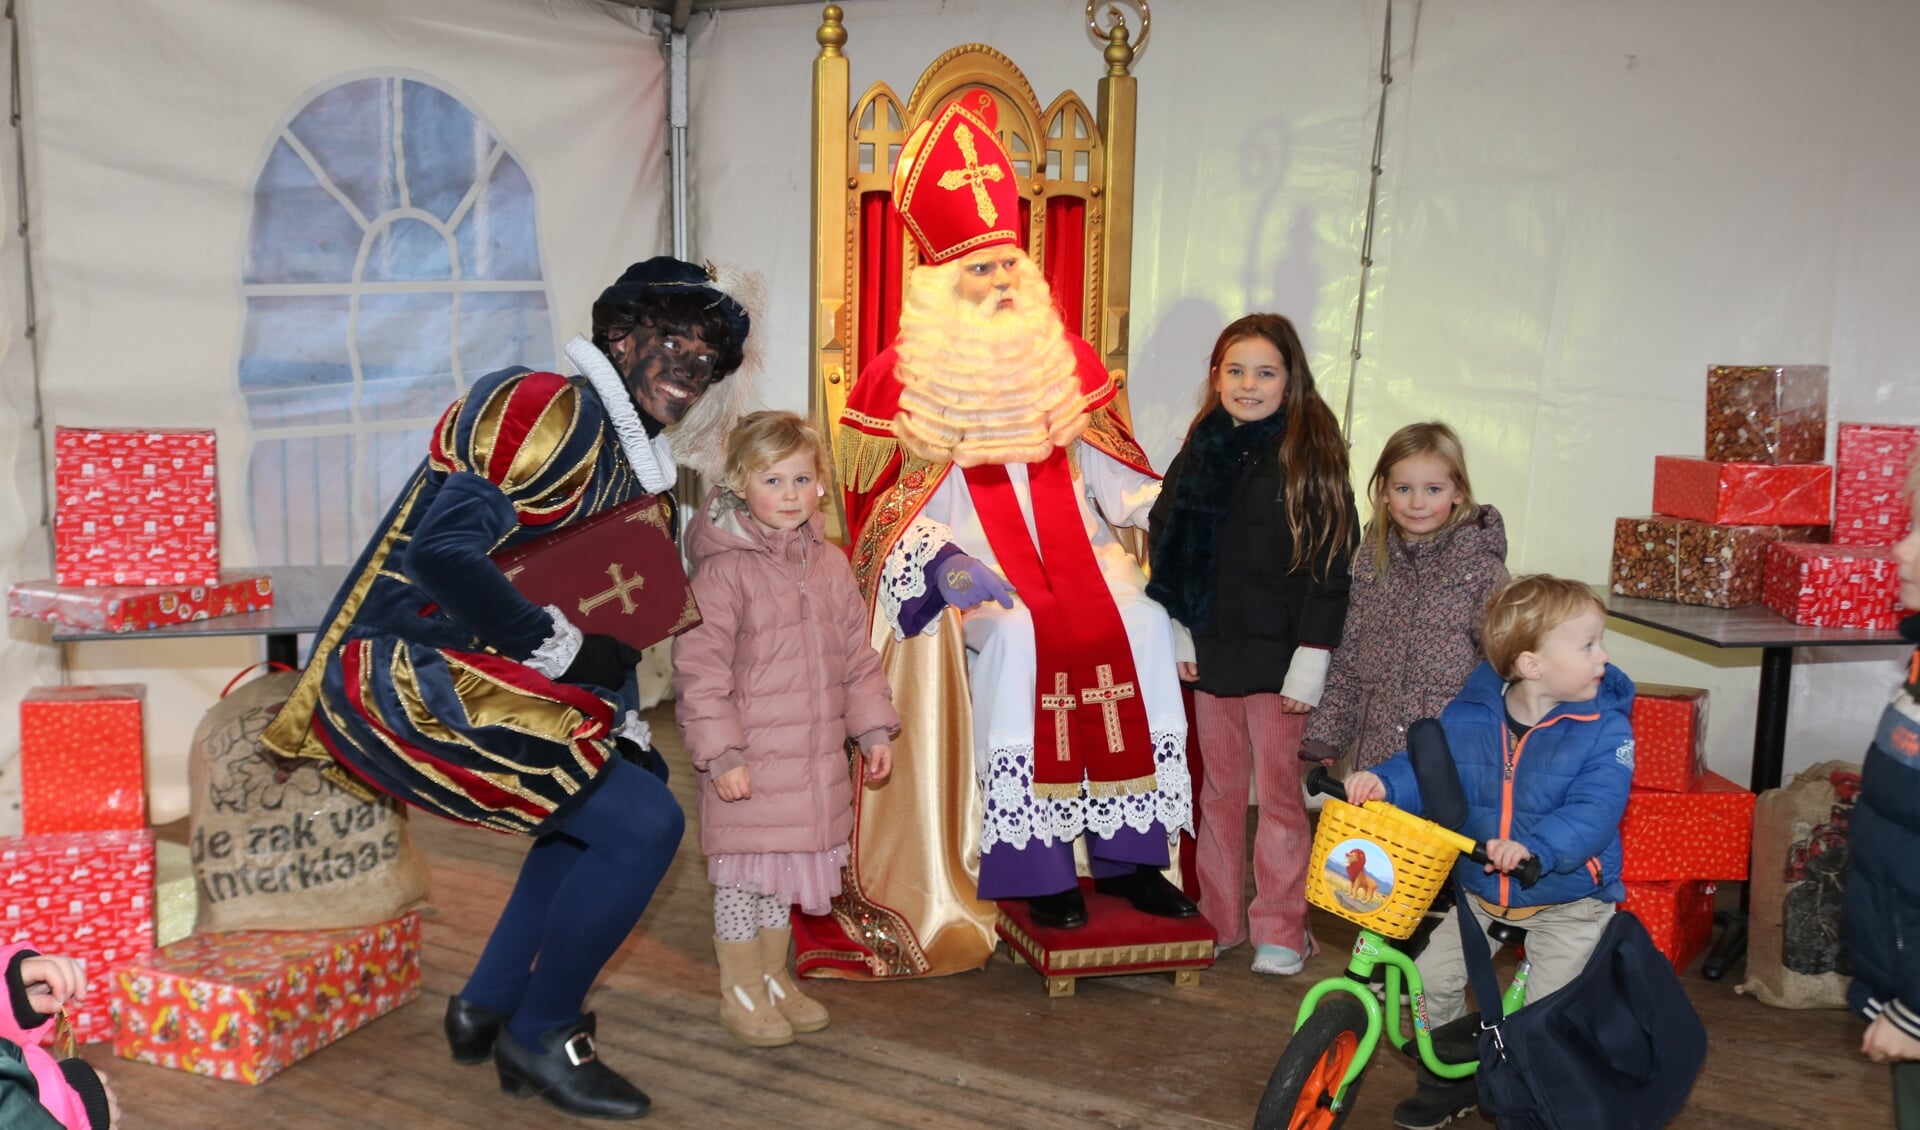 Op de foto met Sinterklaas, dat wilden de kinderen maar al te graag. Foto: Arjen Dieperink